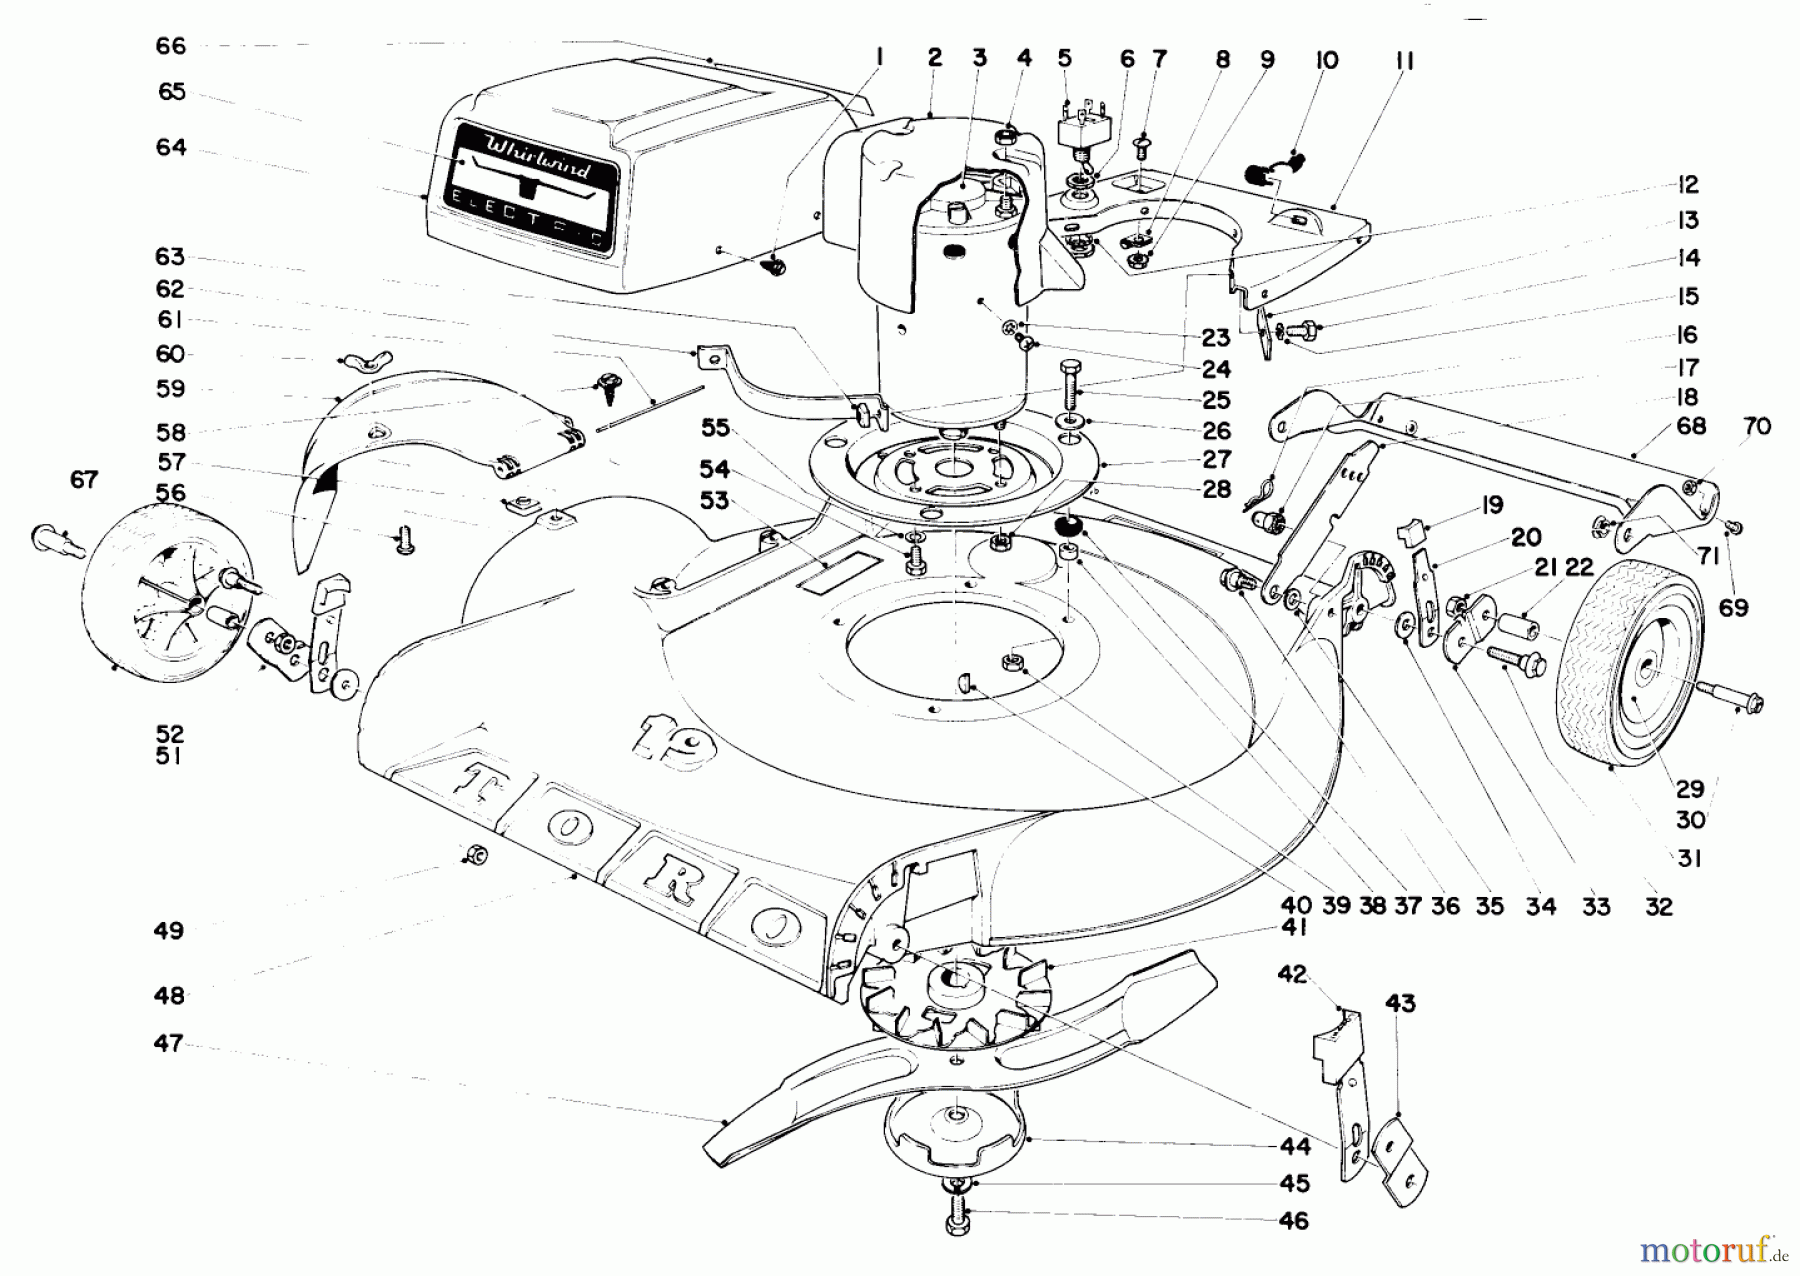  Toro Neu Mowers, Electric 18302 - Toro Electric Whirlwind Lawnmower, 1969 (9000001-9999999) 19